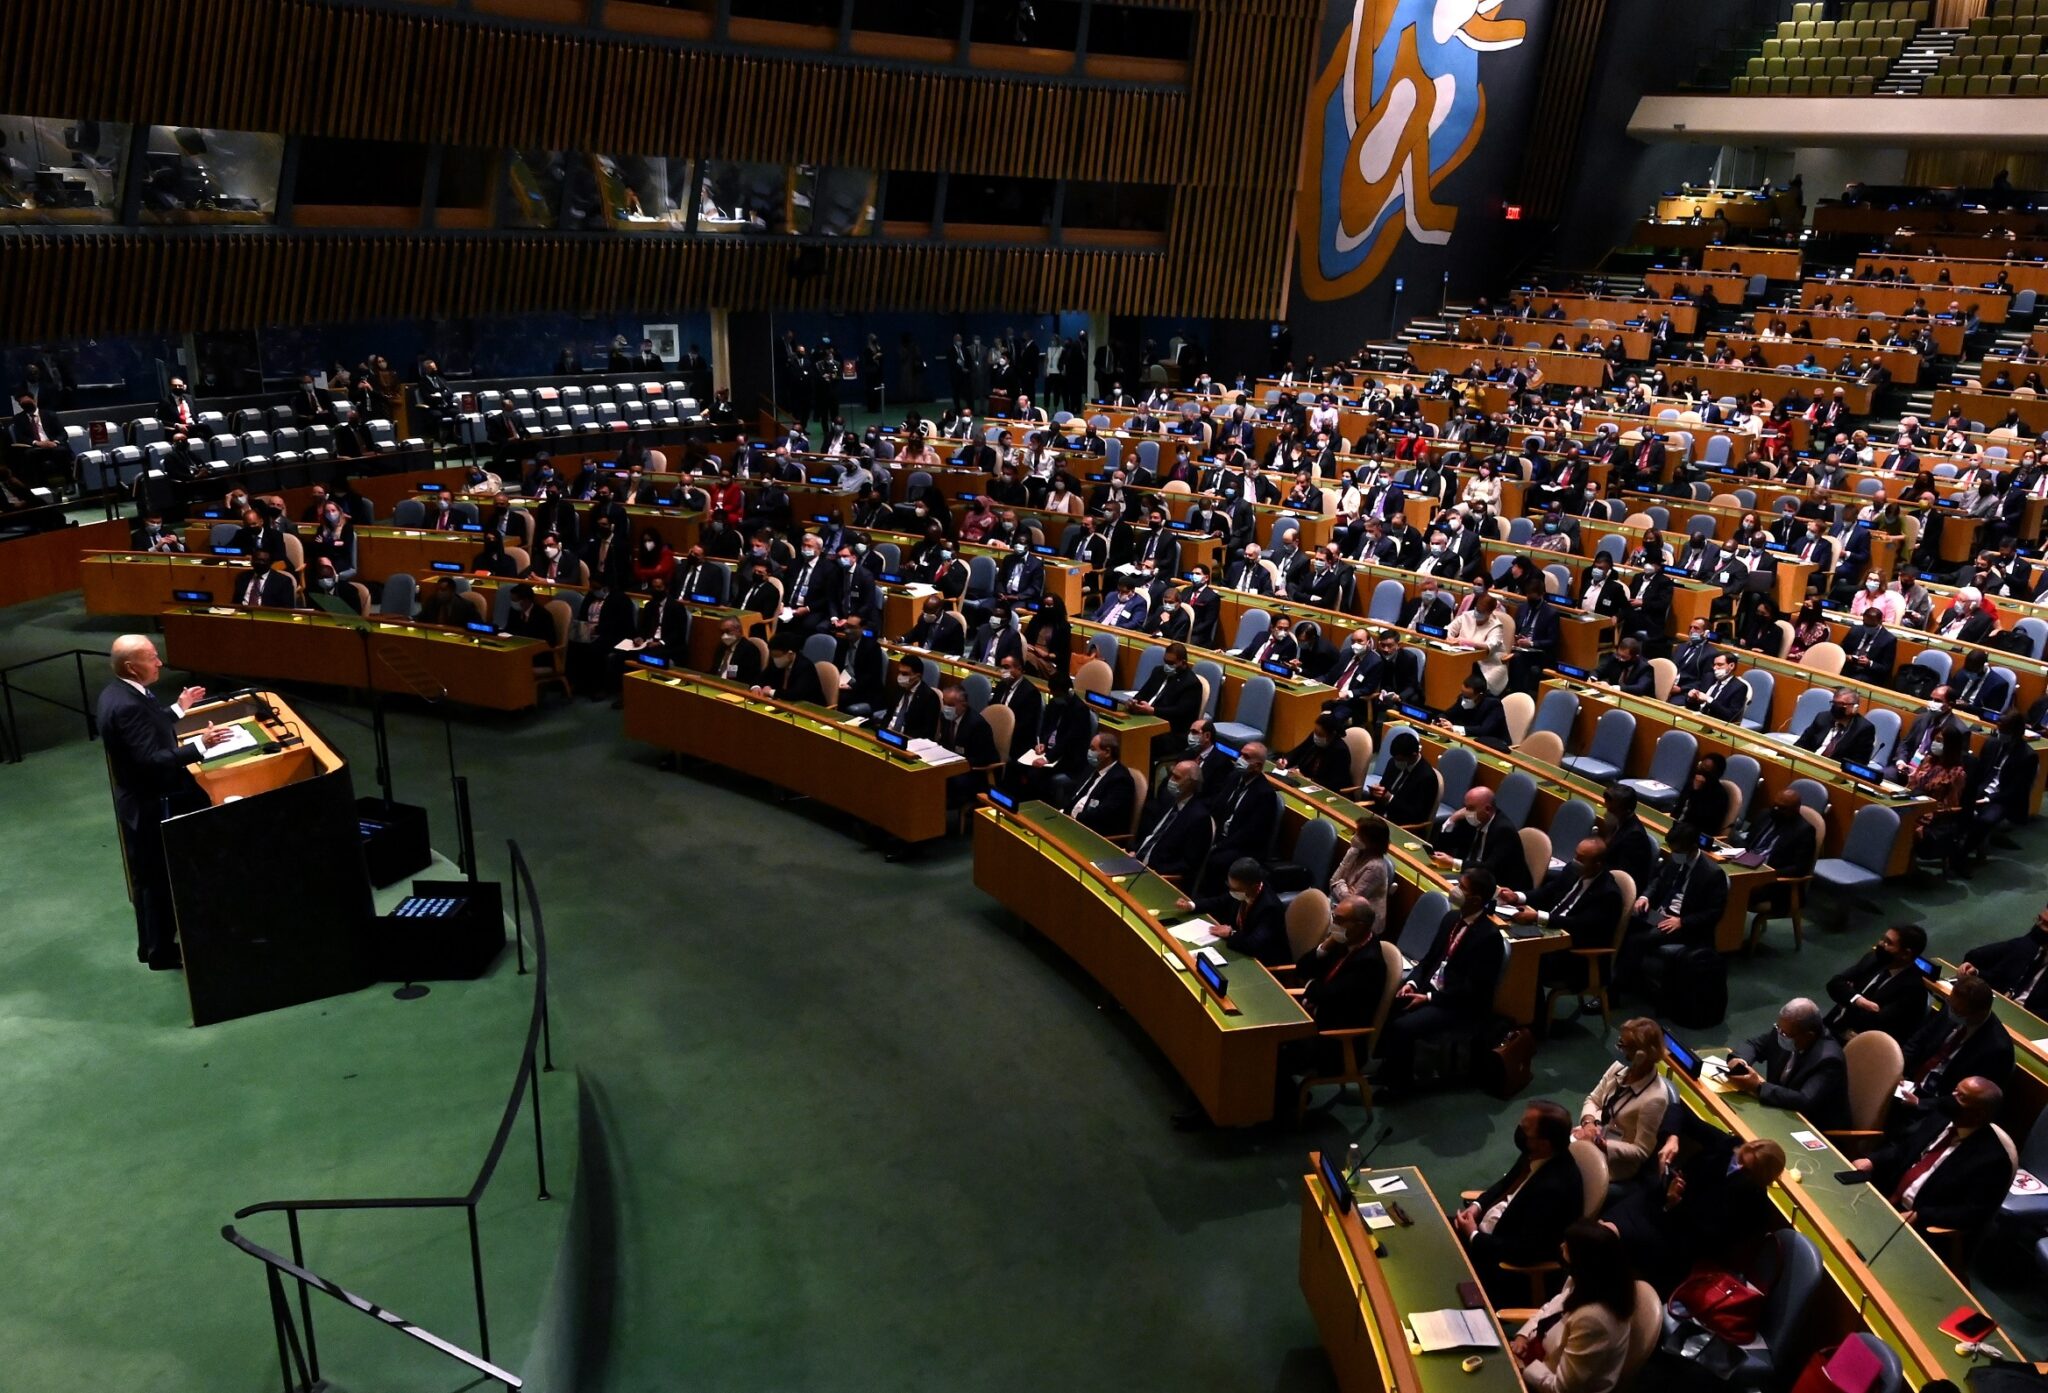 Оон сентябрь. Зал Генеральной Ассамблеи ООН. Зал заседаний Генассамблеи ООН. Генеральная Ассамблея ООН 2018. Генассамблея ООН воз.